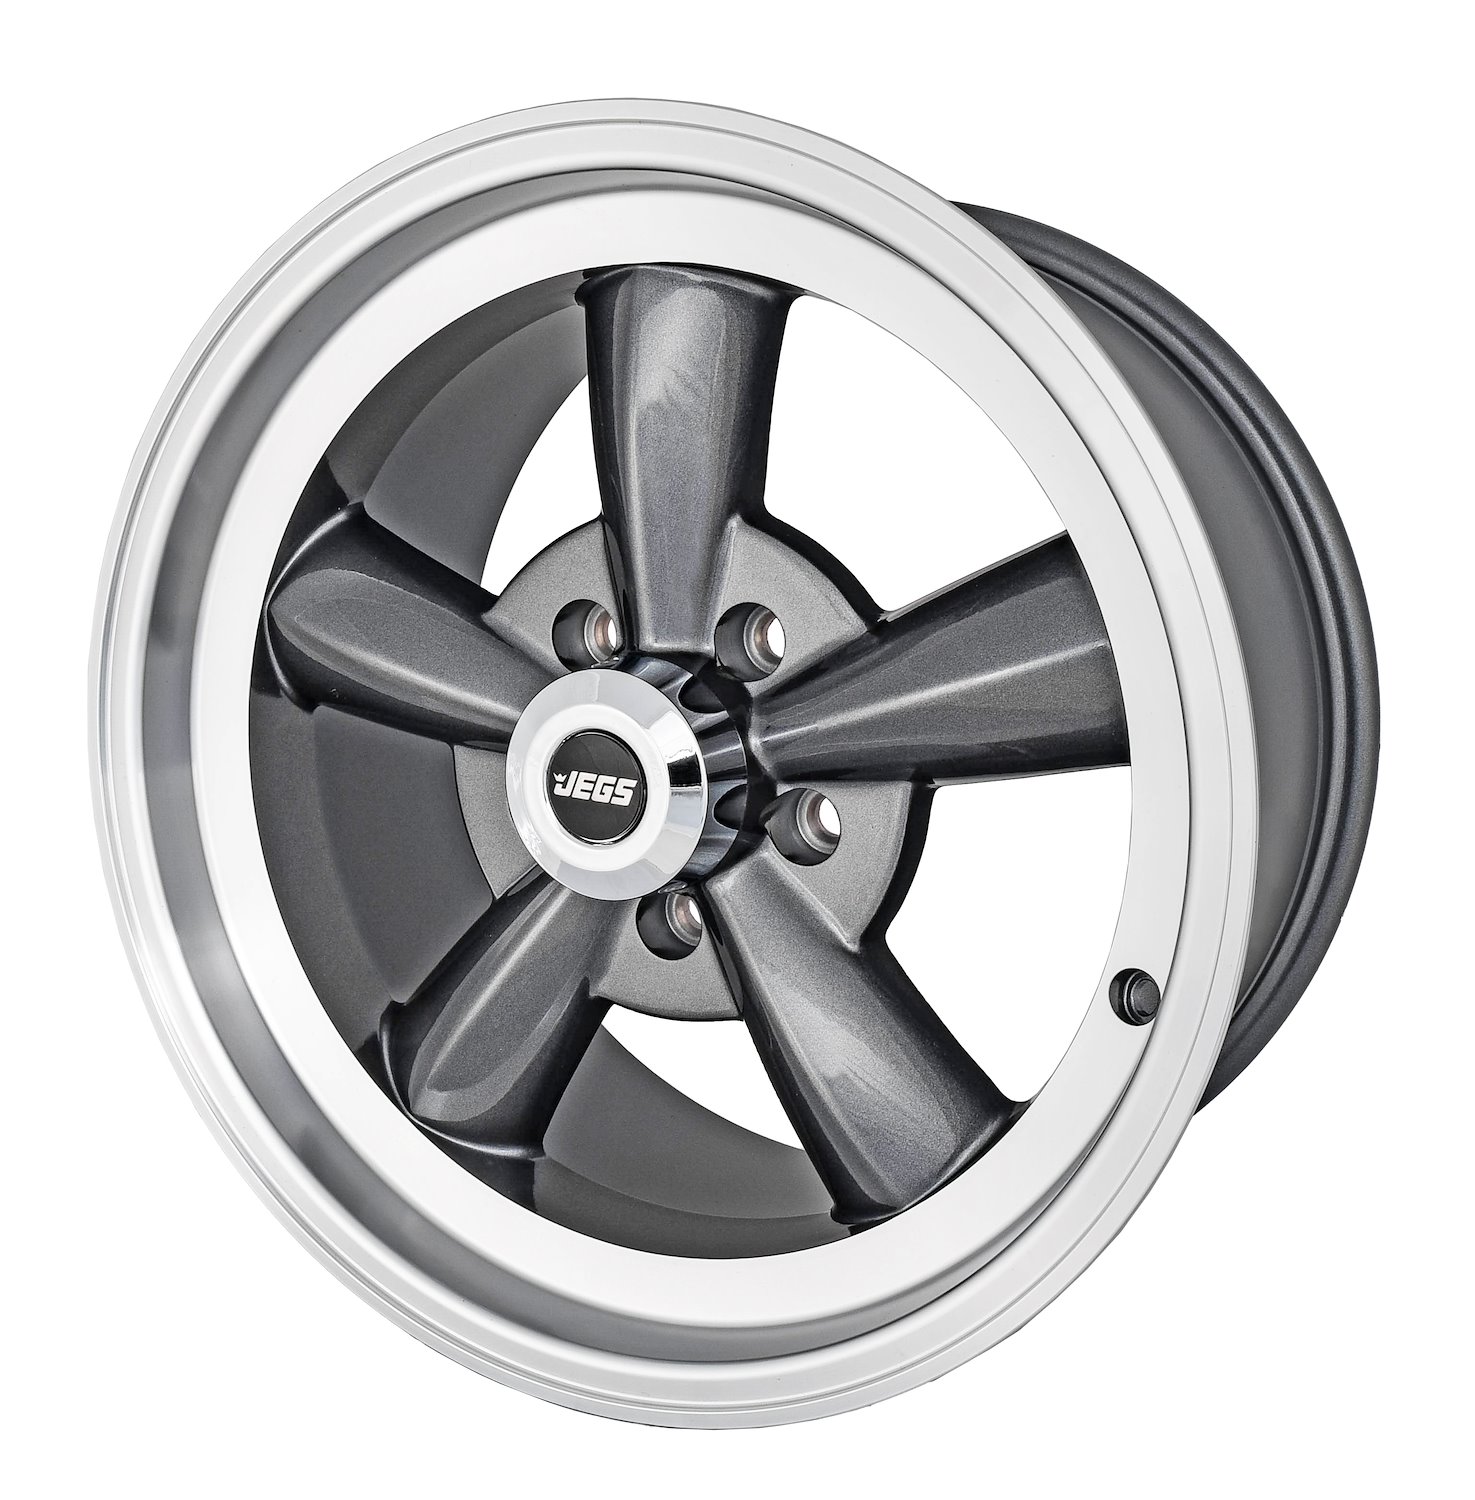 Sport Torque Wheel [Size: 17" x 9"] Polished Lip with Grey Spokes